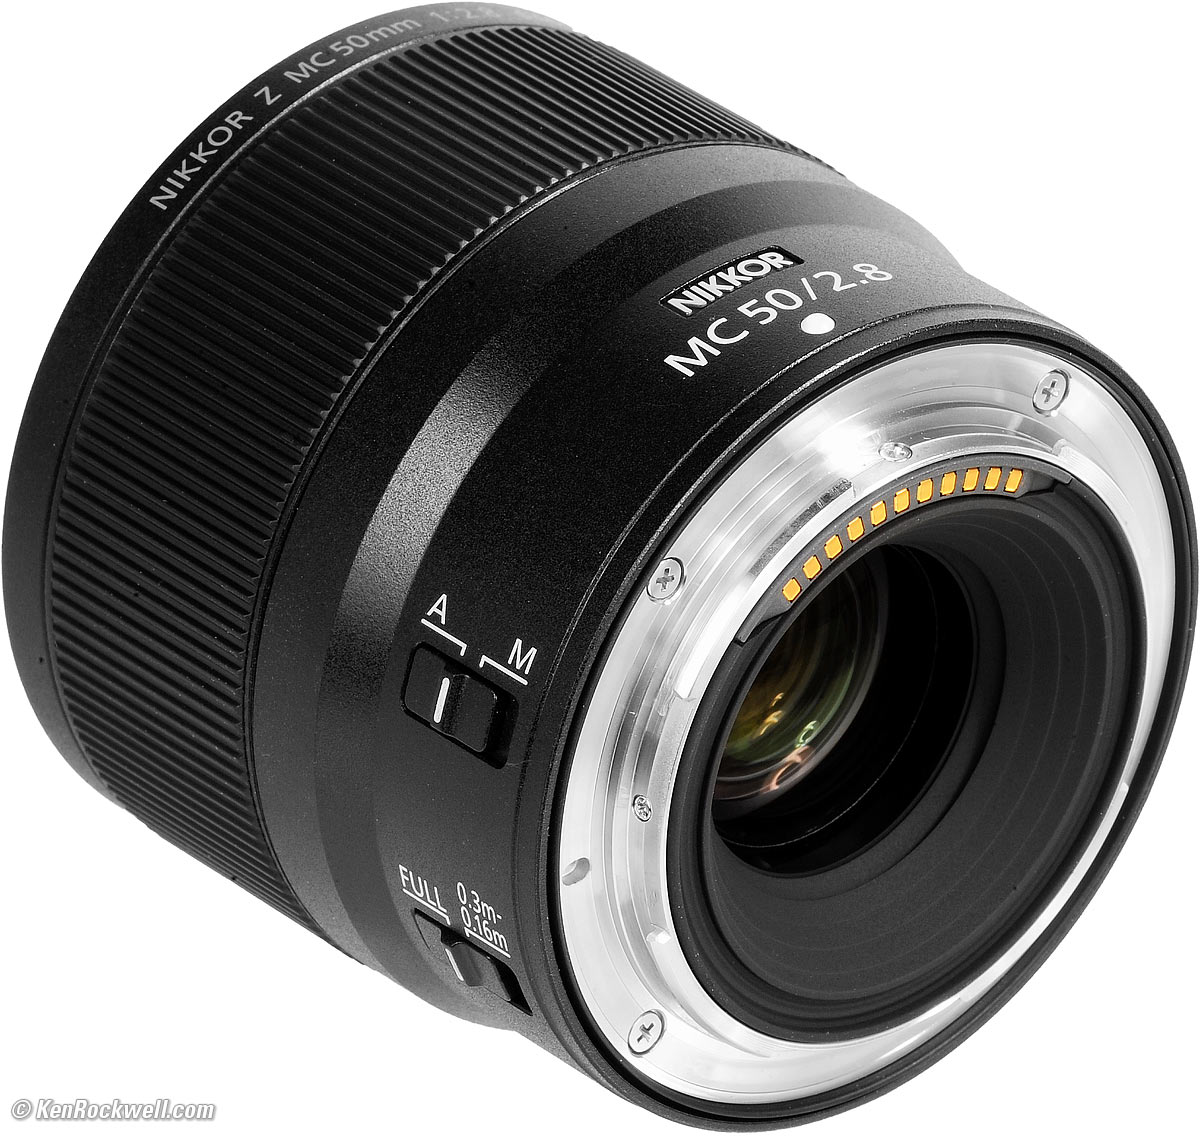 カメラ レンズ(単焦点) Nikon Z 50mm f/2.8 MC Macro Review